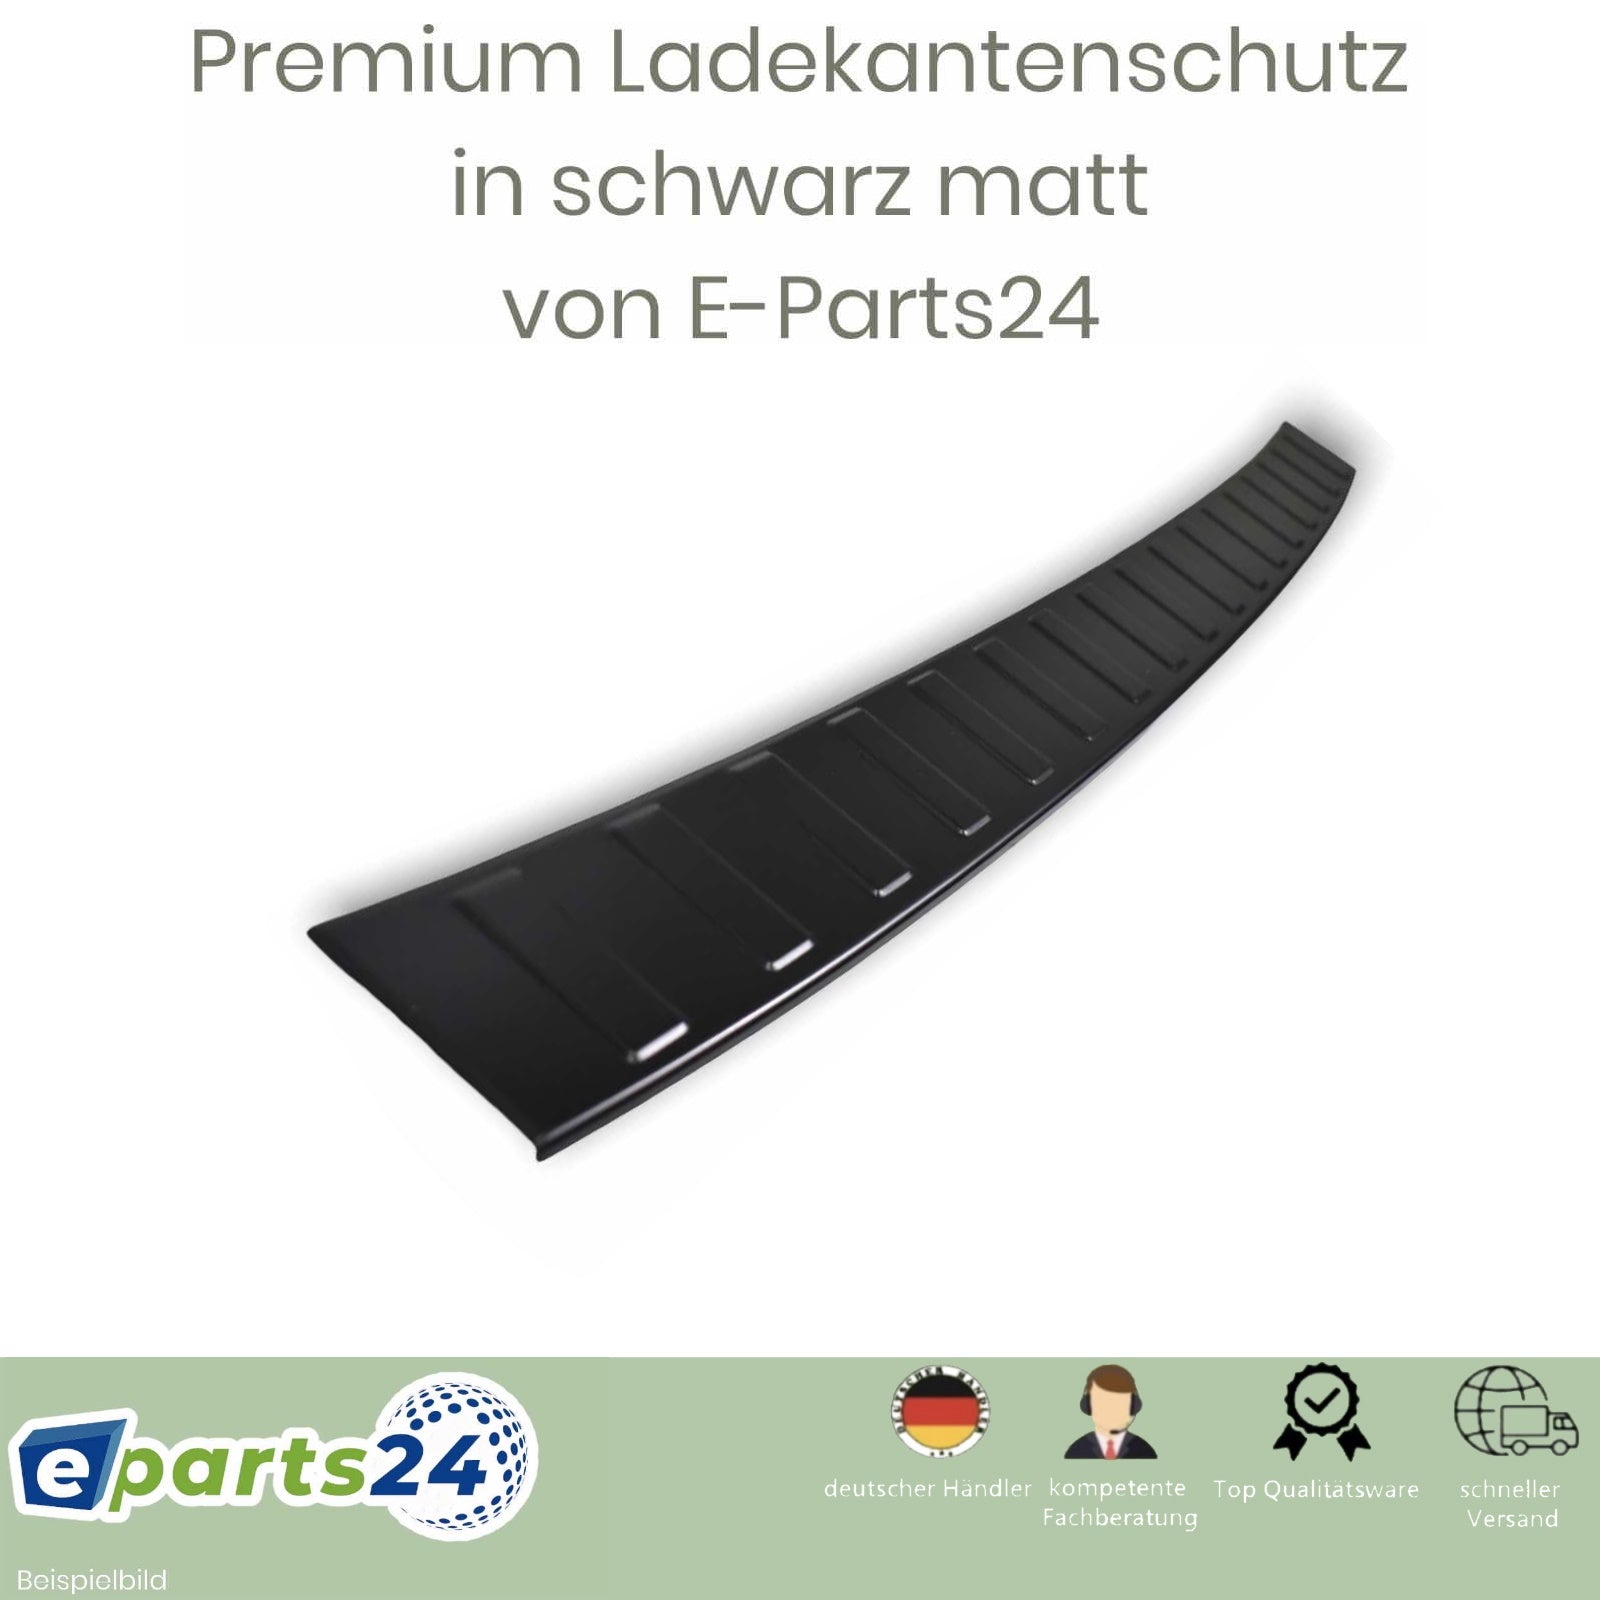 Ladekantenschutz Heckschutz für – pul schwarz Tarraco matt 2018- ab Seat E-Parts24